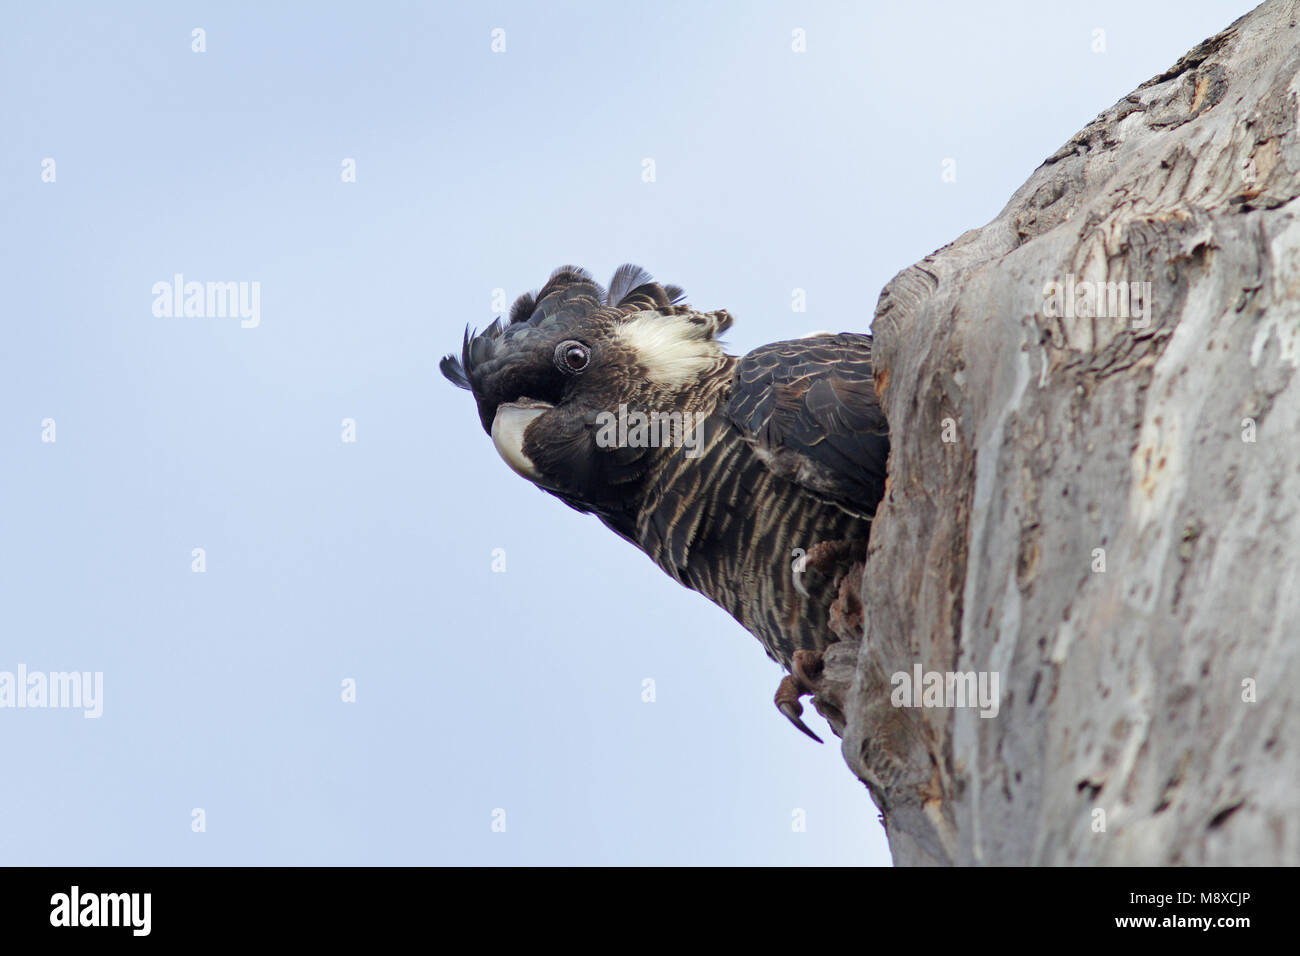 Kortsnavelraafkaketoe in boom, Slender-billed Black-Cockatoo in tree Stock Photo